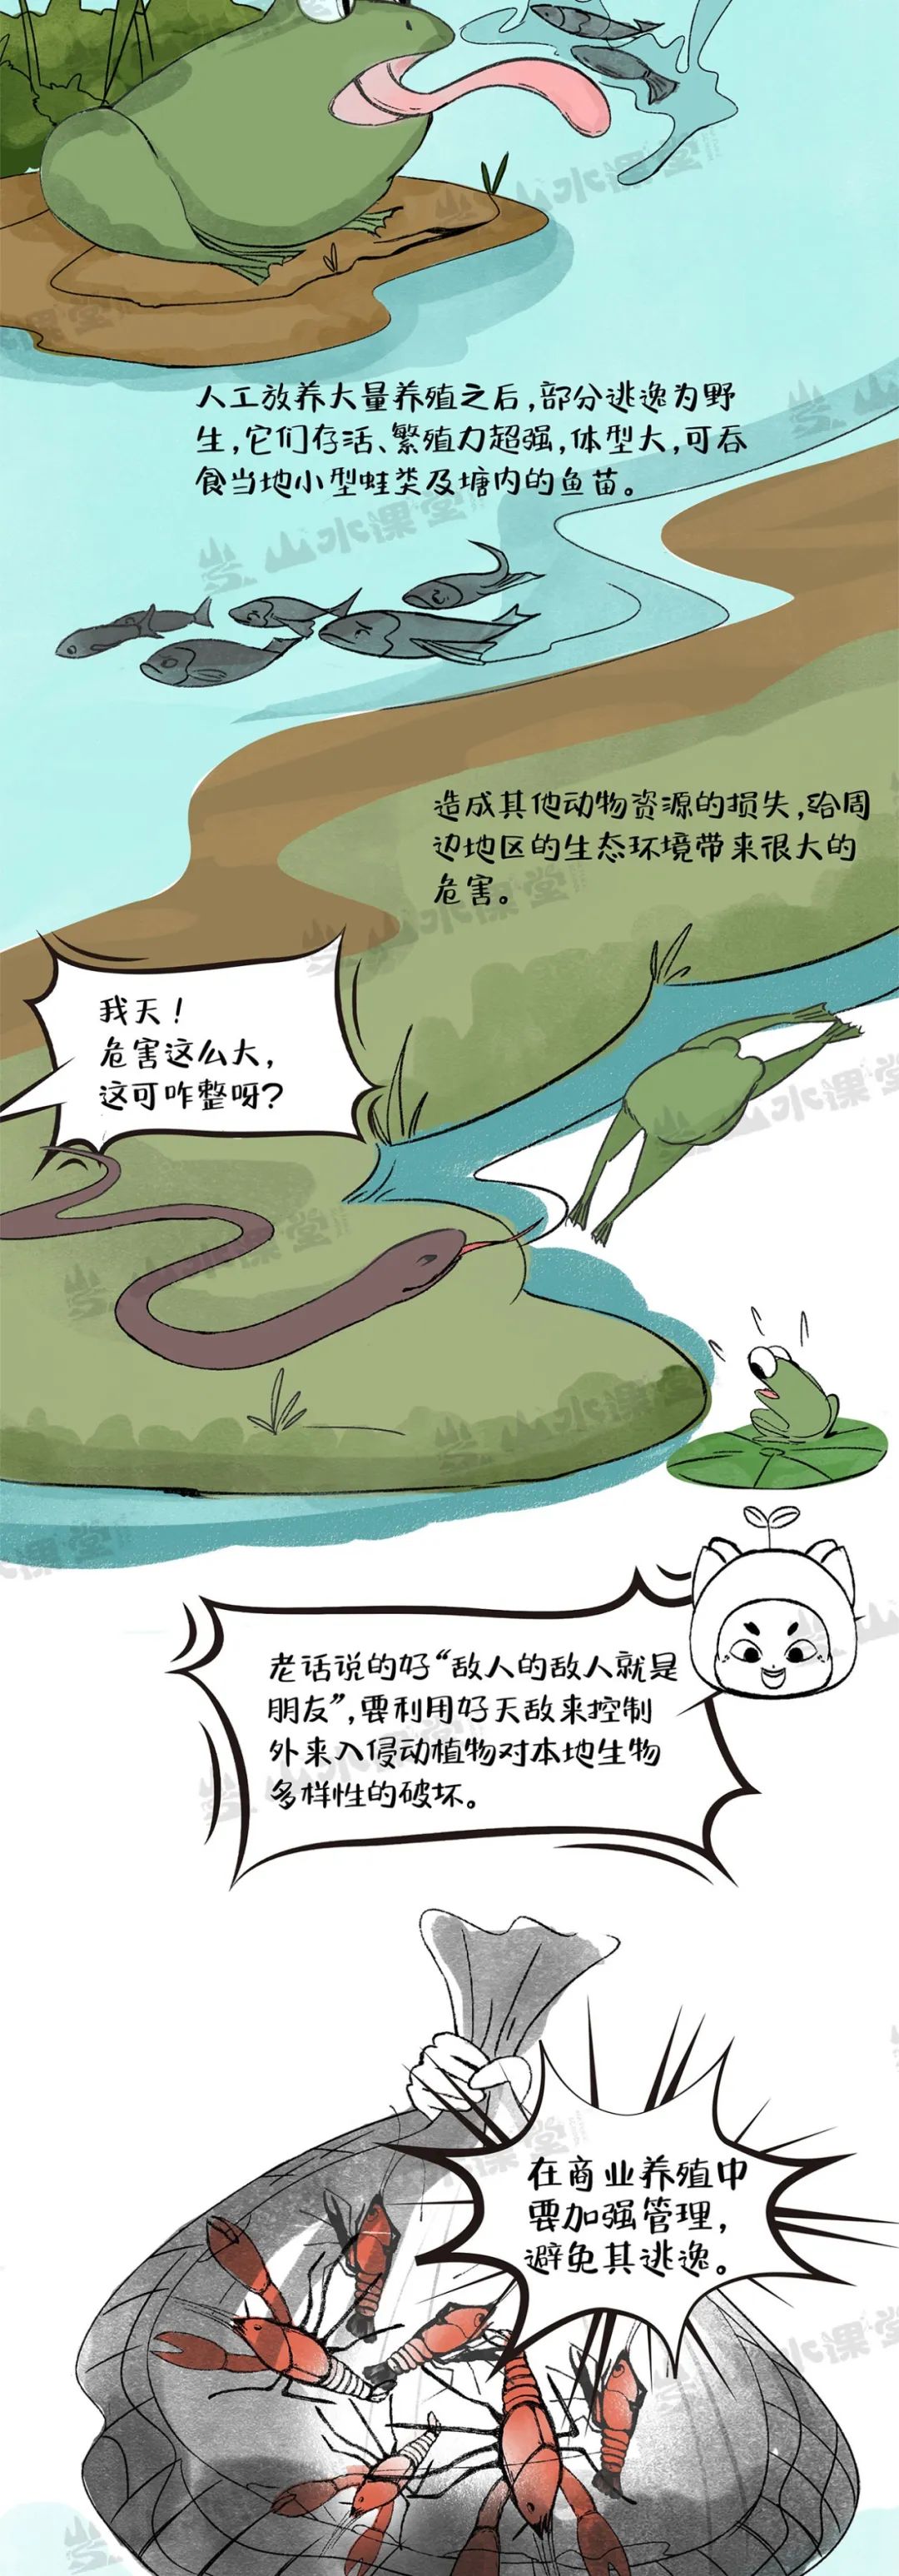 图解漫画 | 长江流域小龙虾的“利”与“害”，一吃可解否？